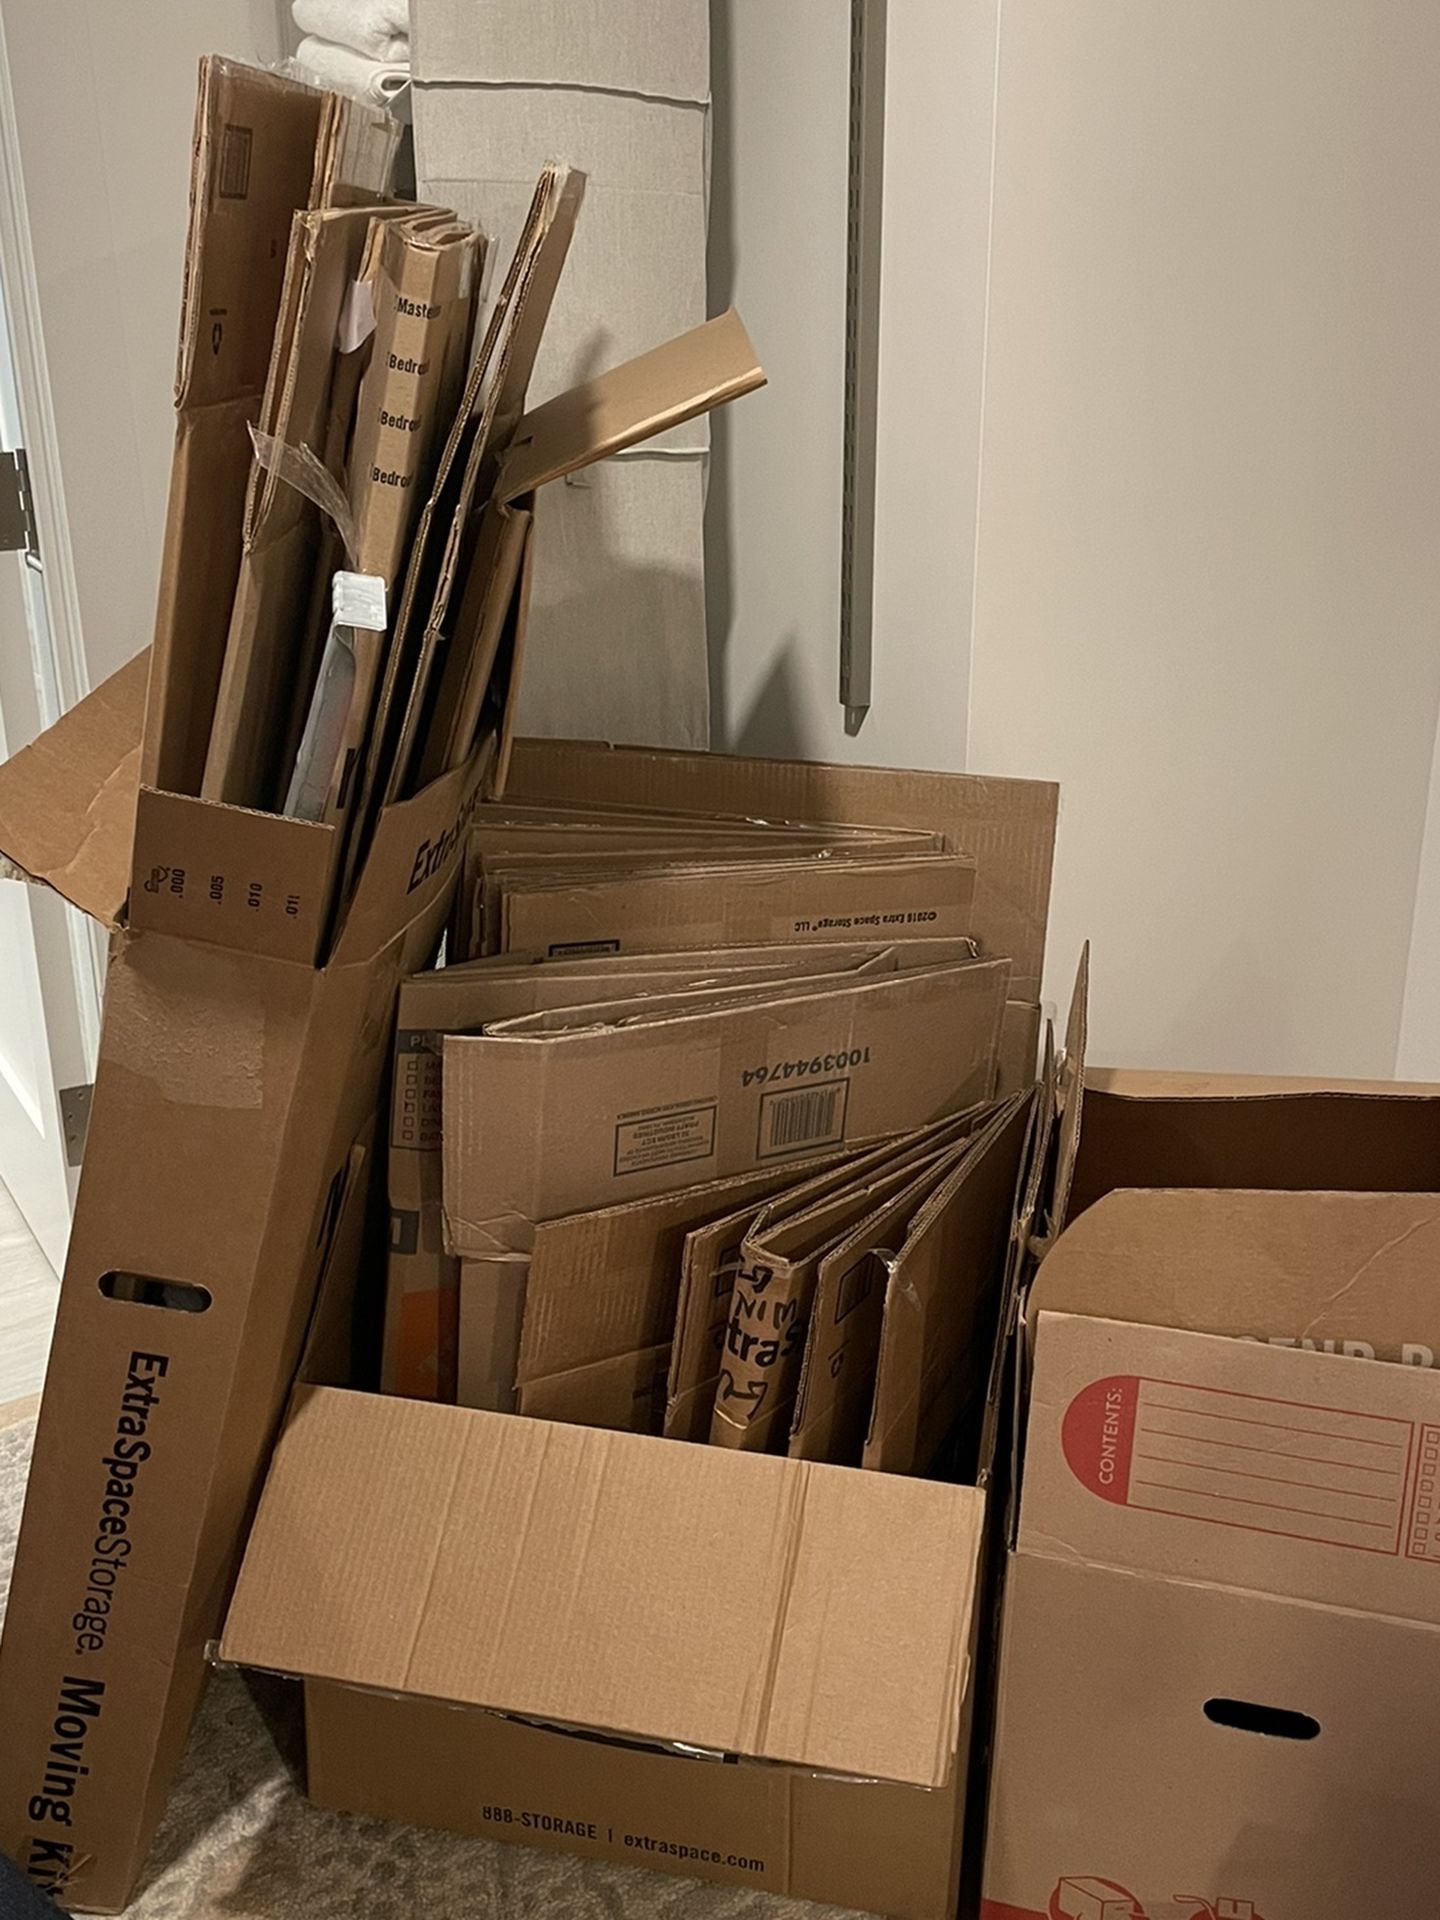 Moving Boxes - Wardrobe, Medium and Small Boxes